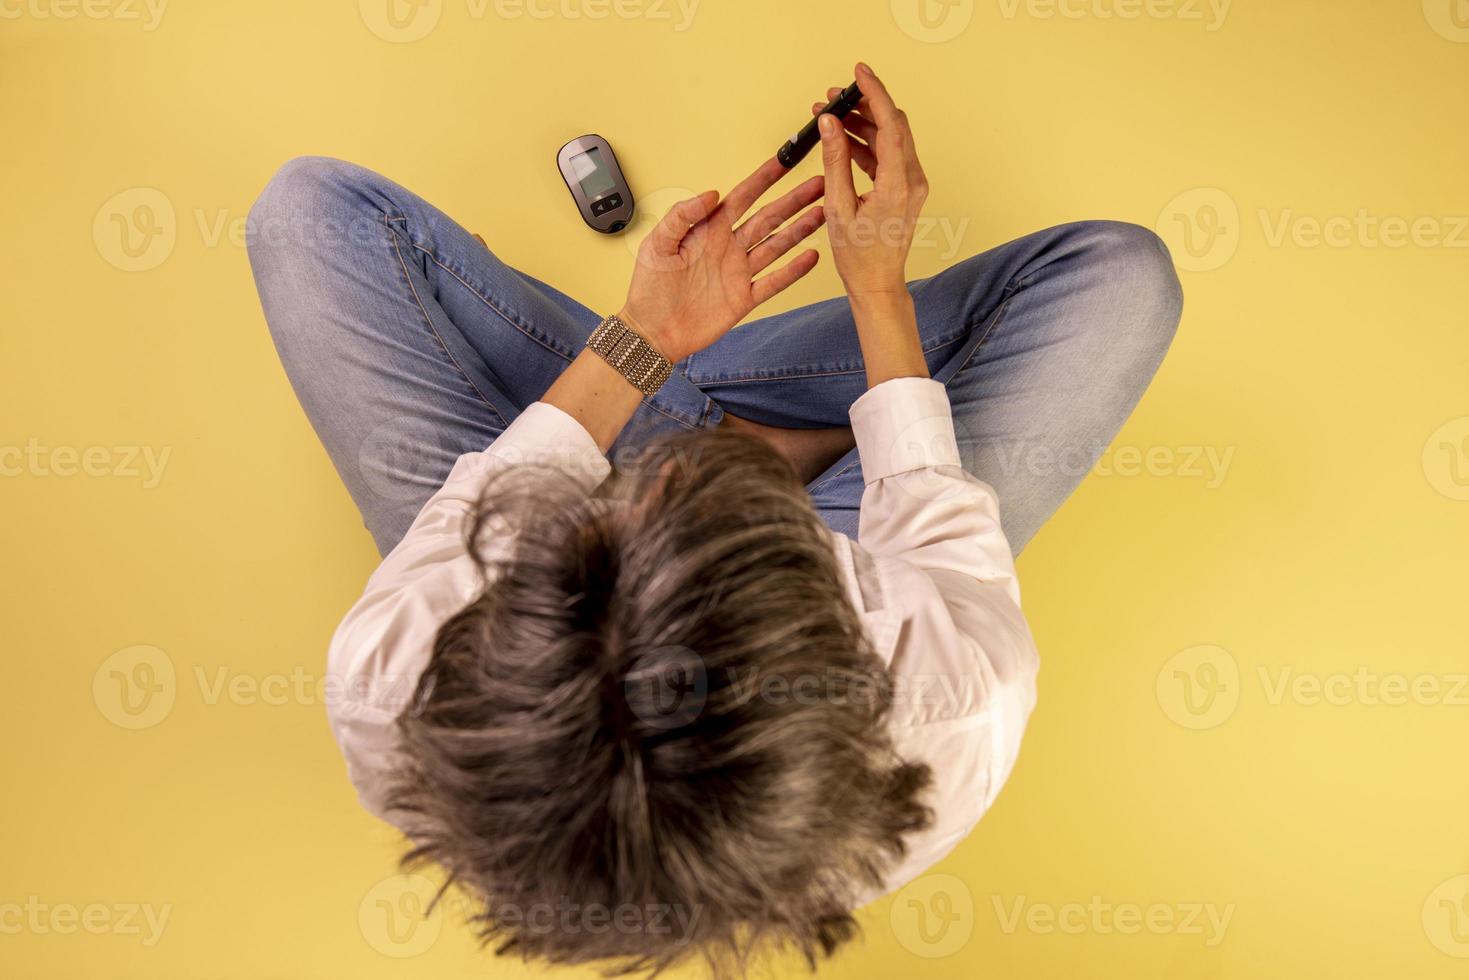 mujer diabética sentada en el suelo usando dispositivos para medir la glucosa en sangre foto